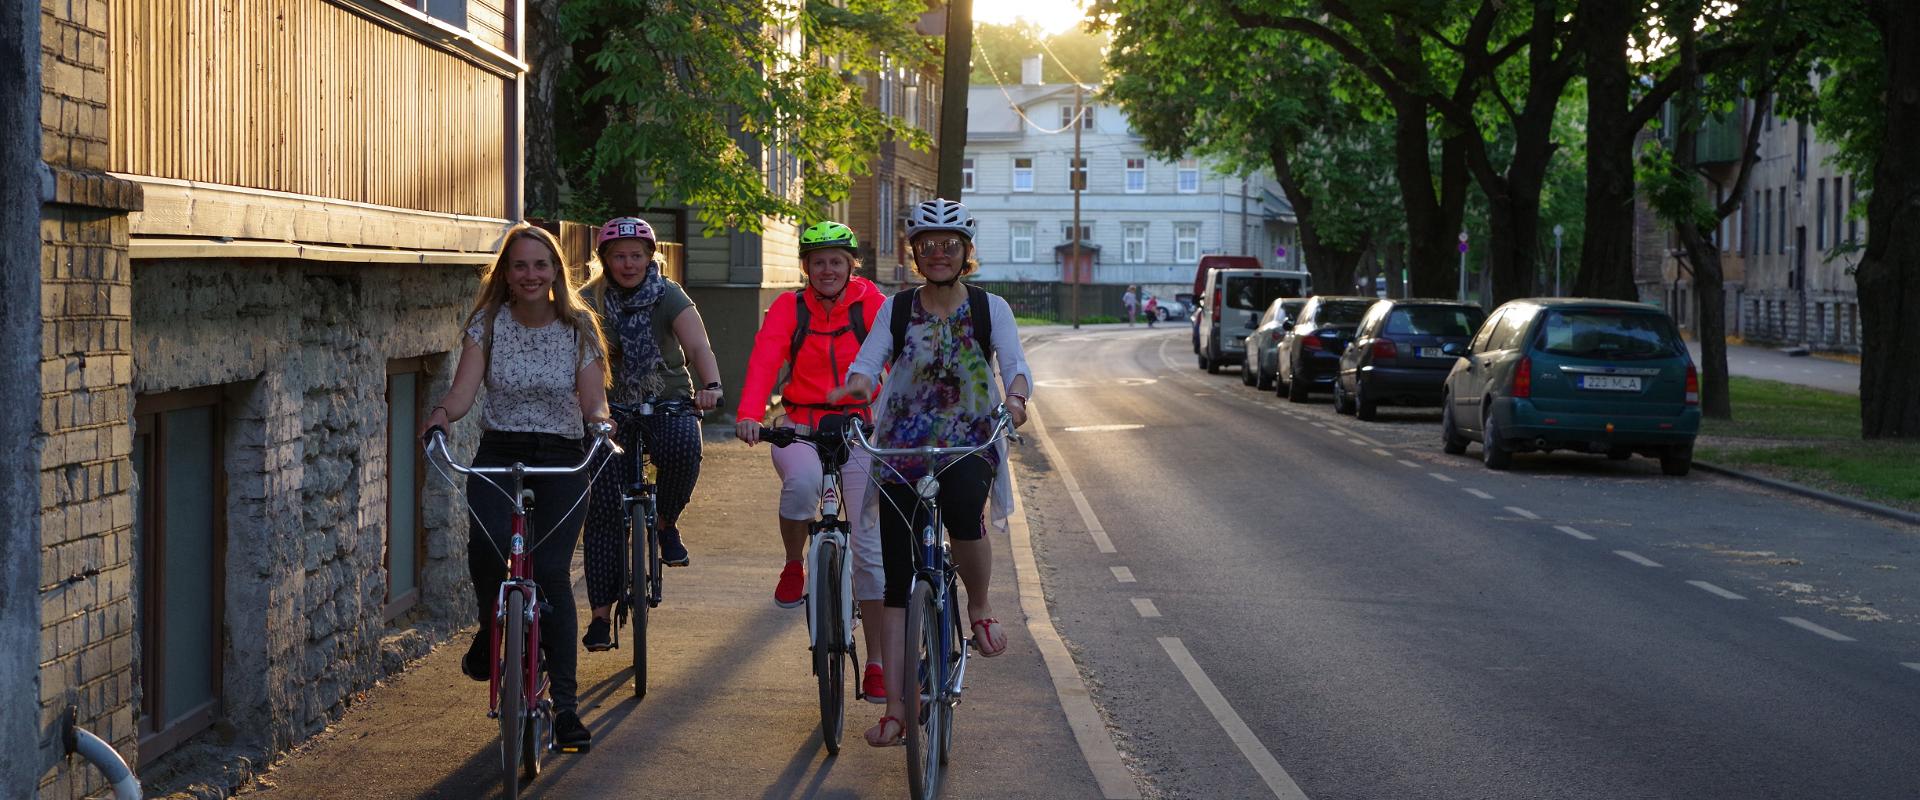 Mit dem Fahrrad auf den abendlichen Straßen von Tallinn